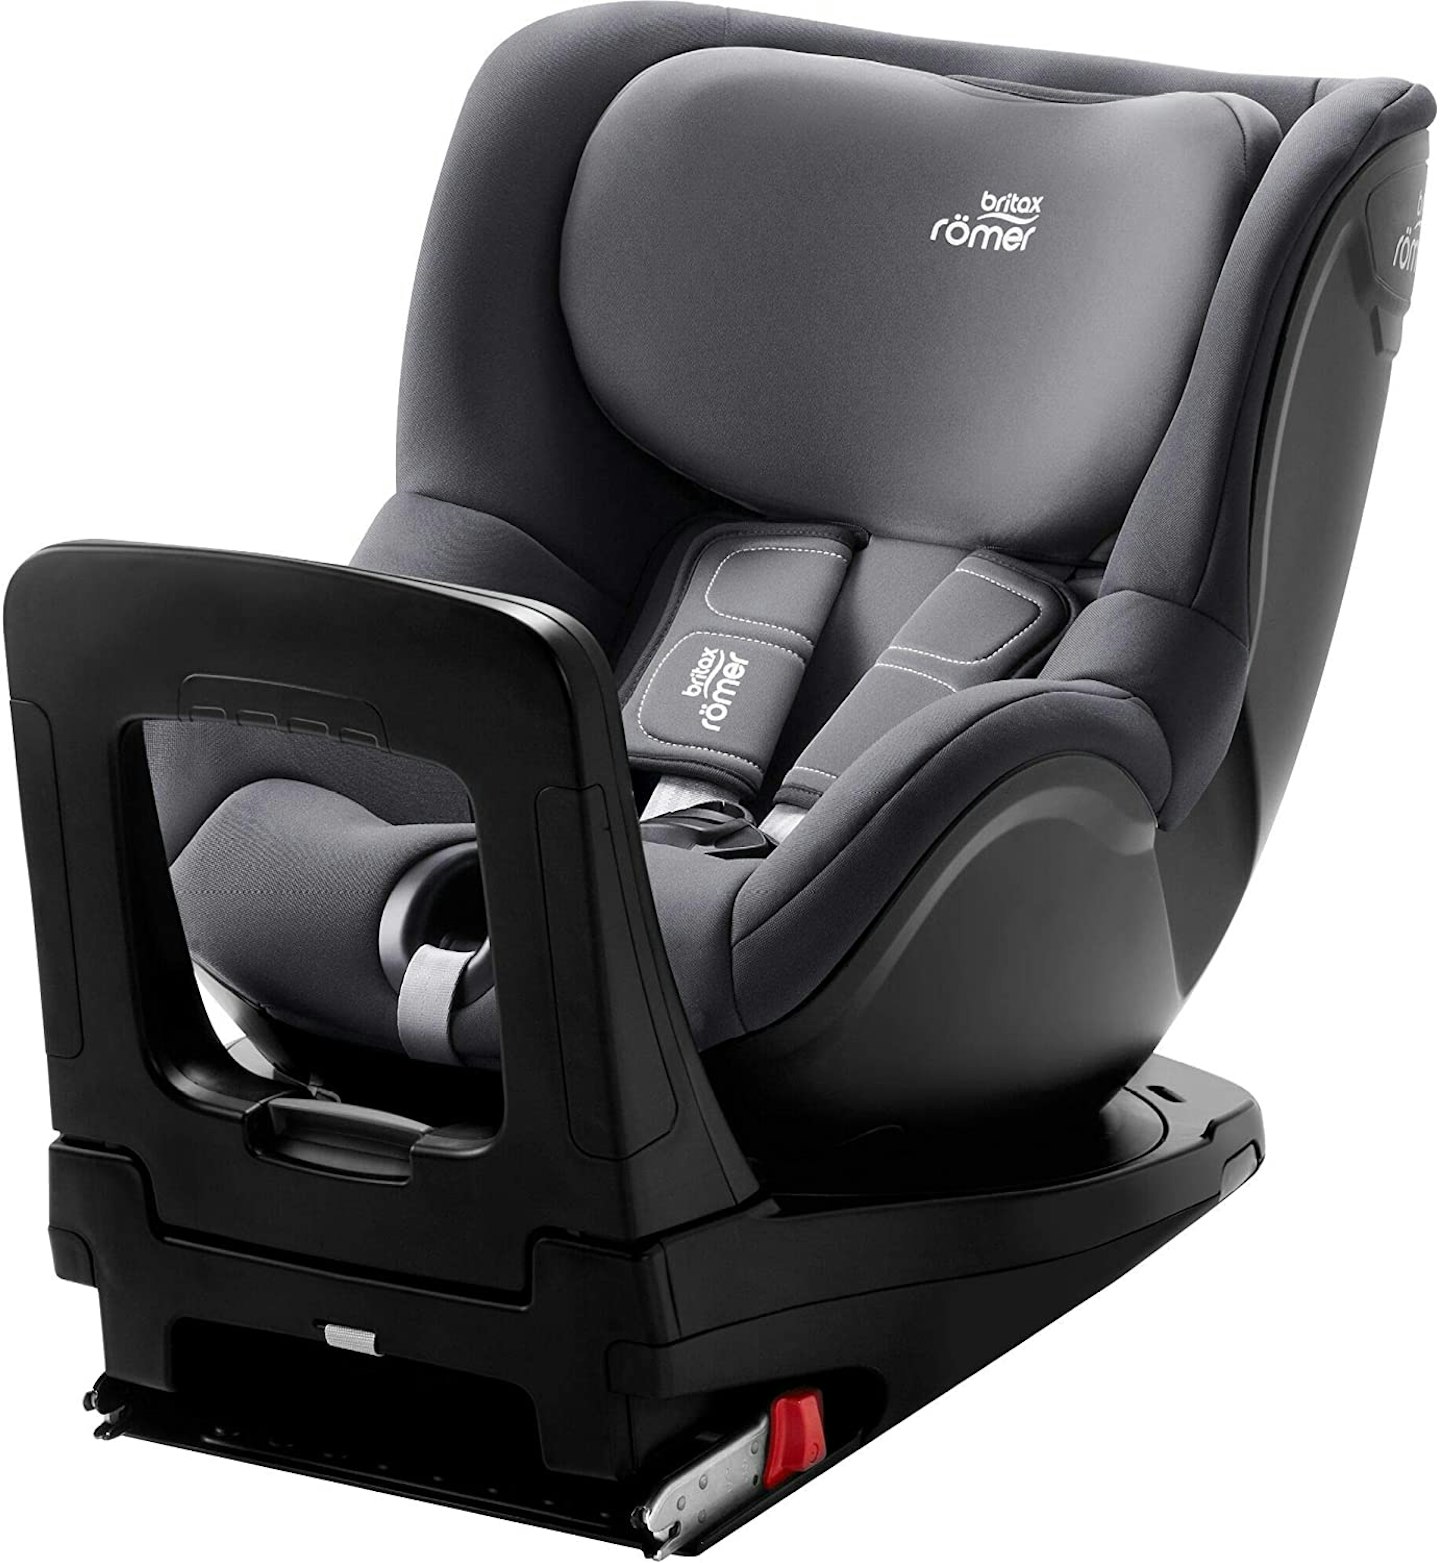 Britax Ru00f6mer child seat